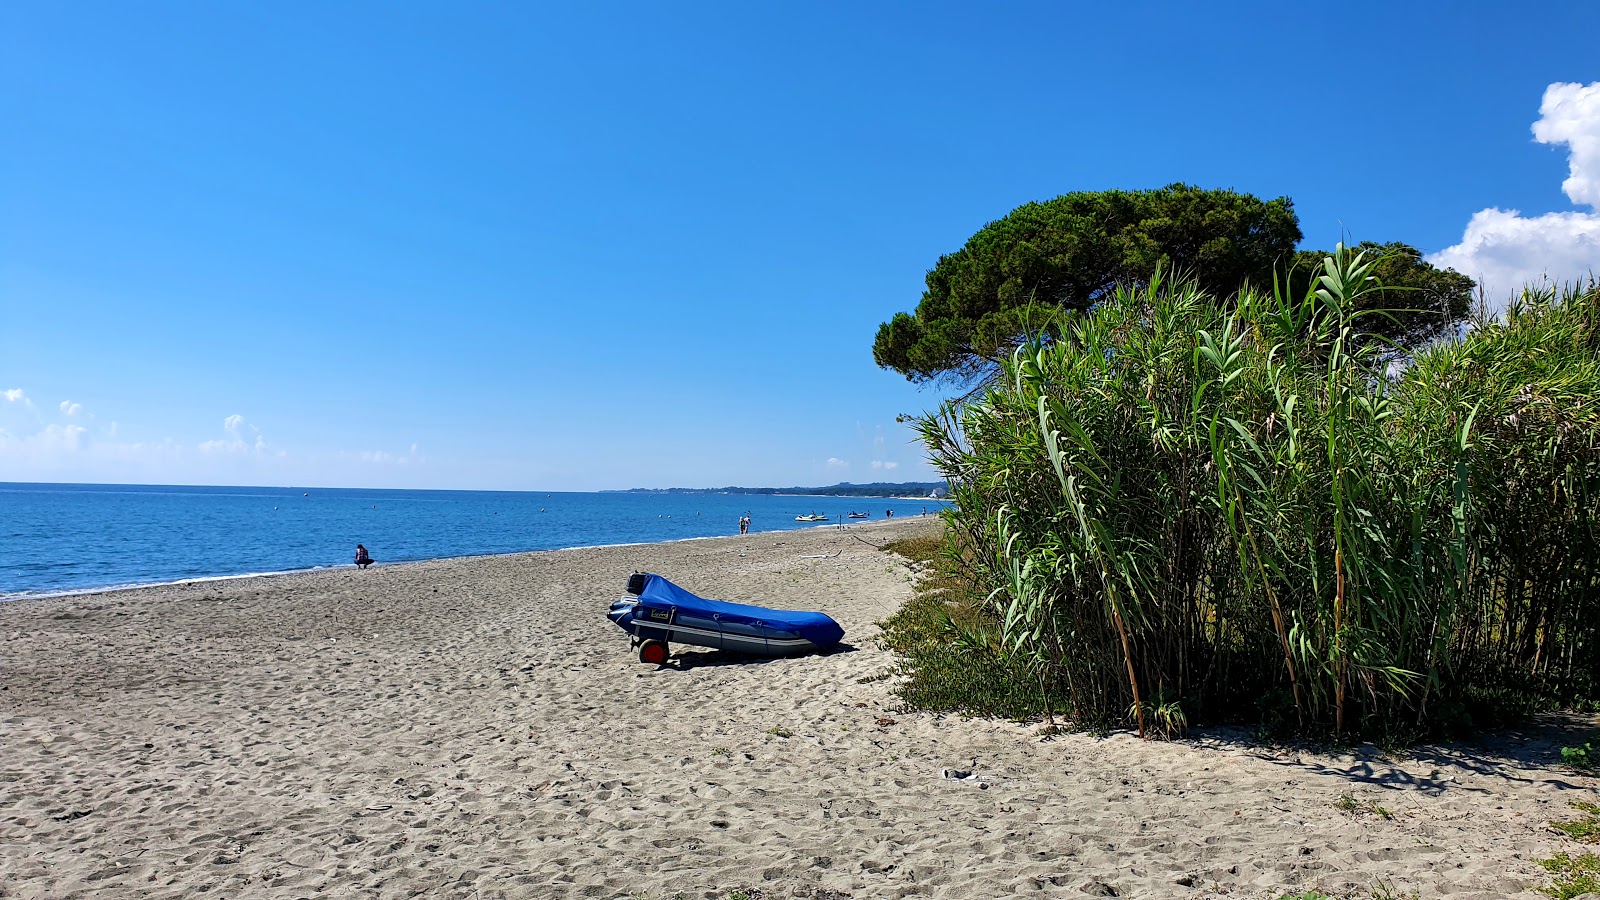 Ponticchio beach'in fotoğrafı - rahatlamayı sevenler arasında popüler bir yer